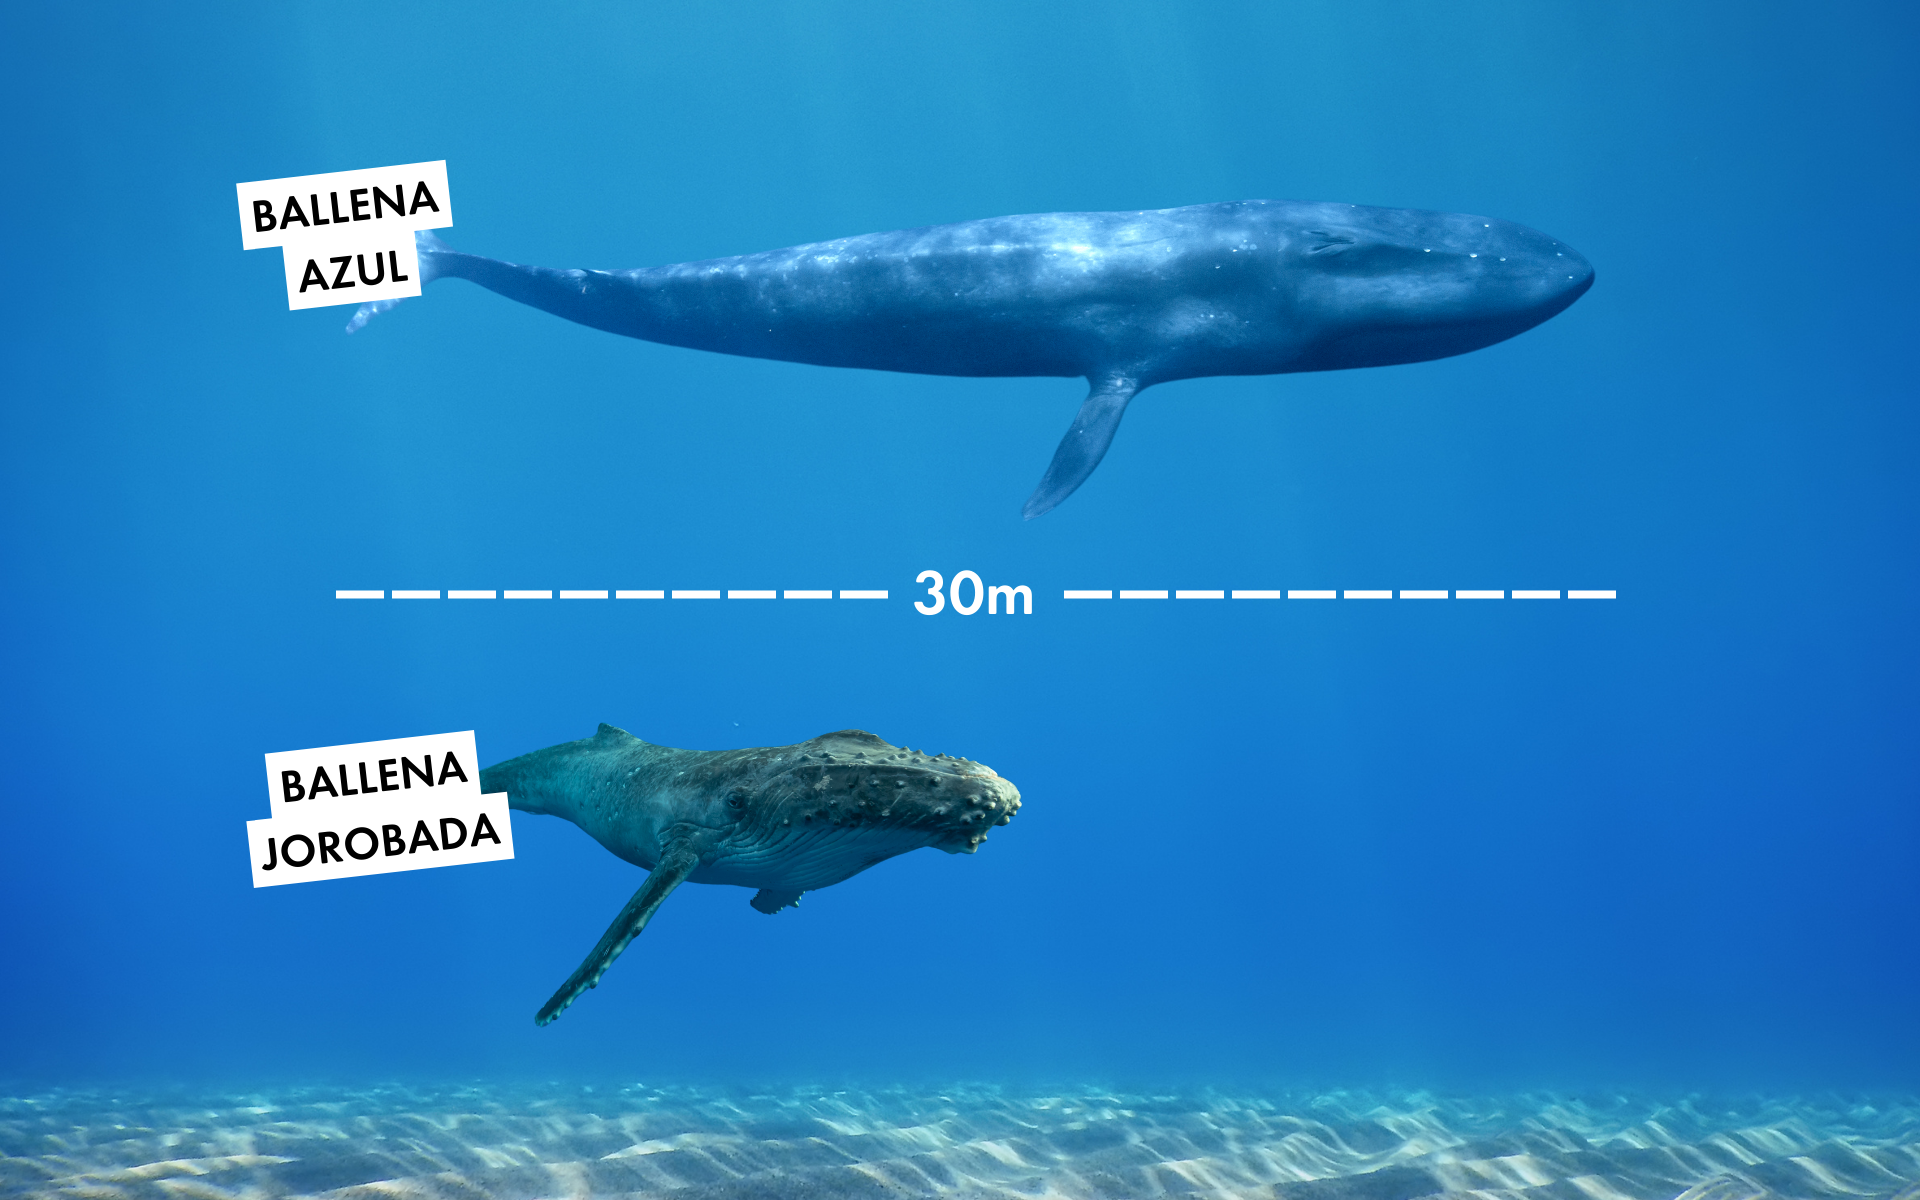 gráfico comparativo entre el tamaño de una ballena azul (30m) y una ballena jorobada (15m)